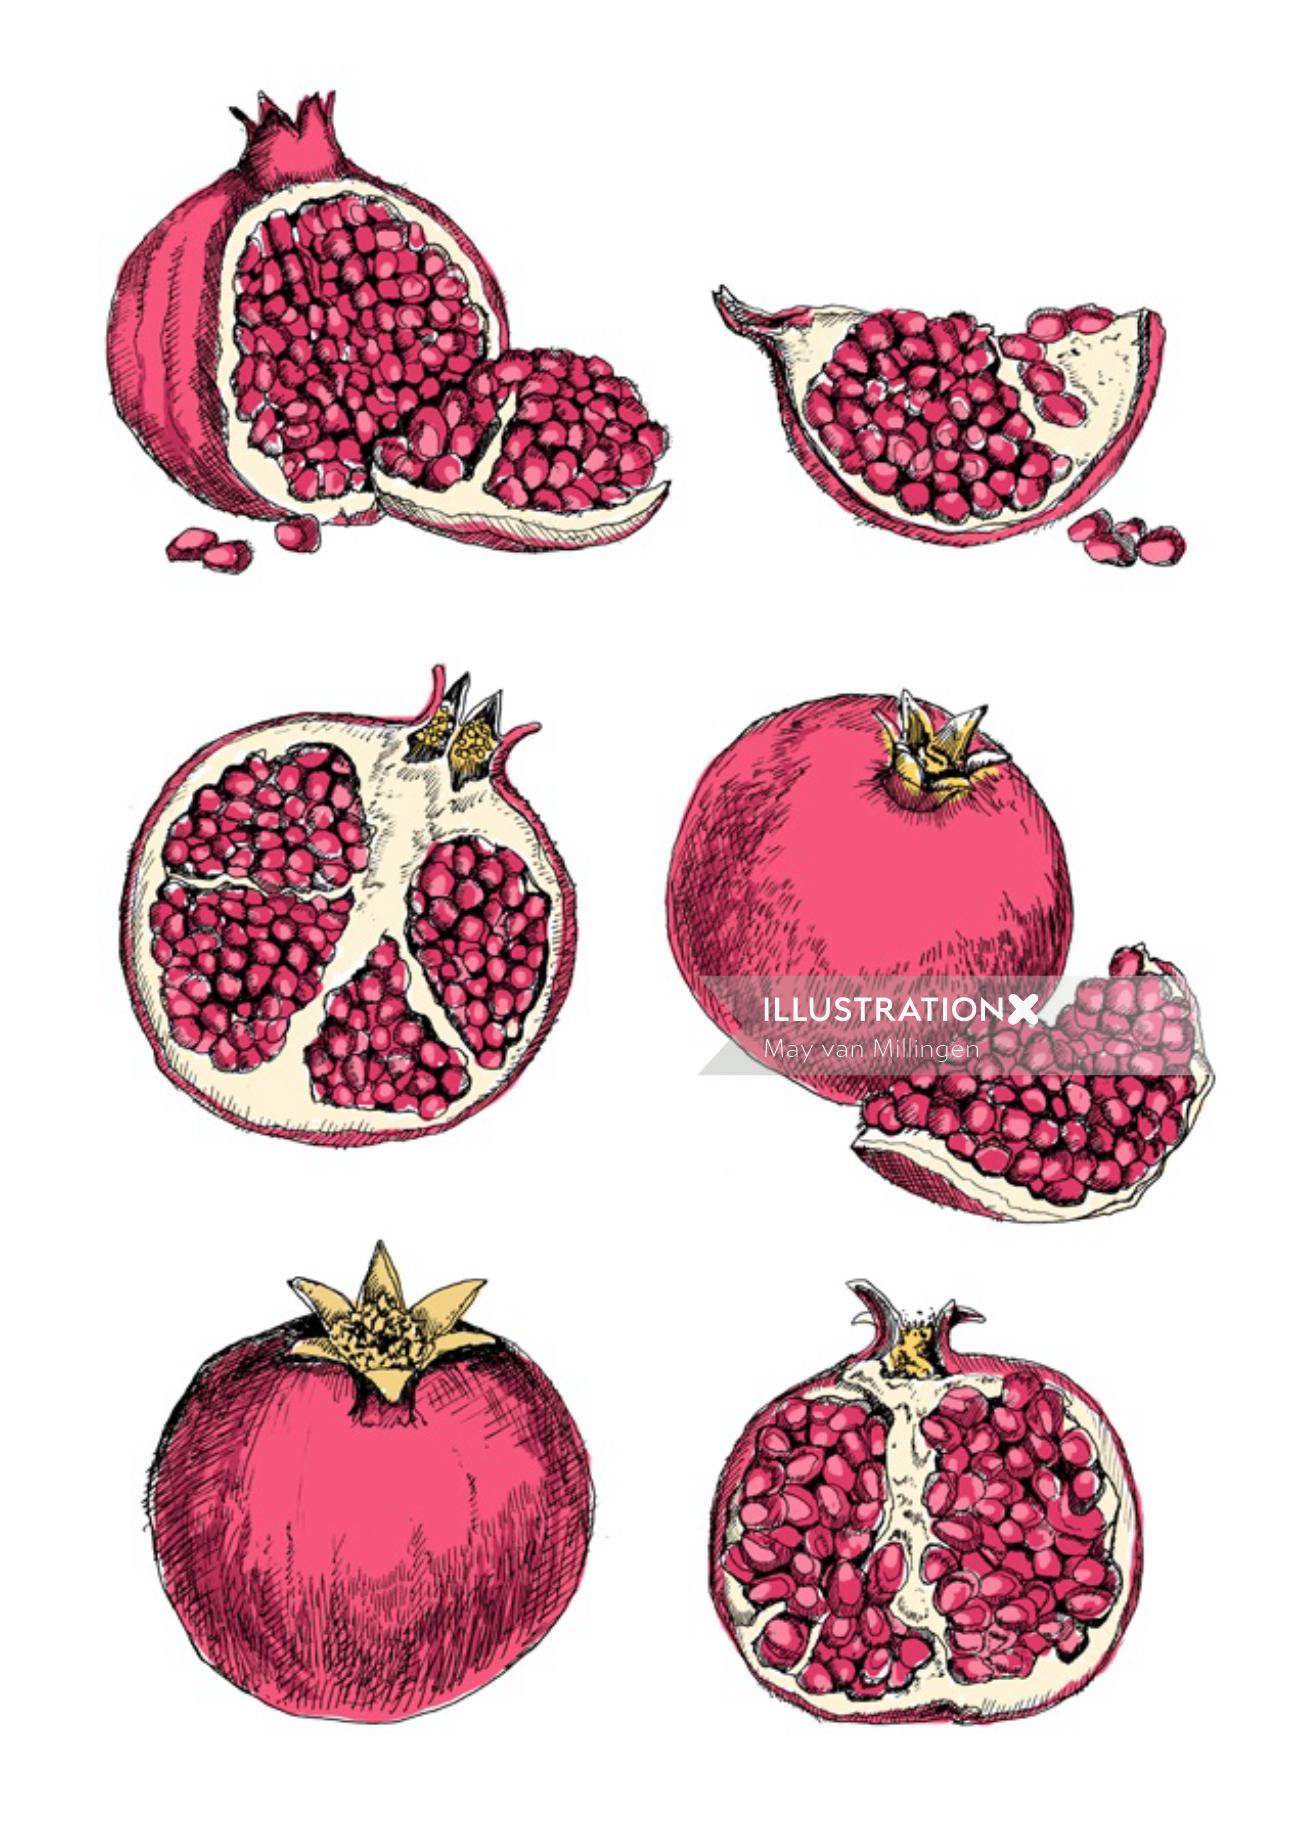 Pomegranate illustration by May van Millingen